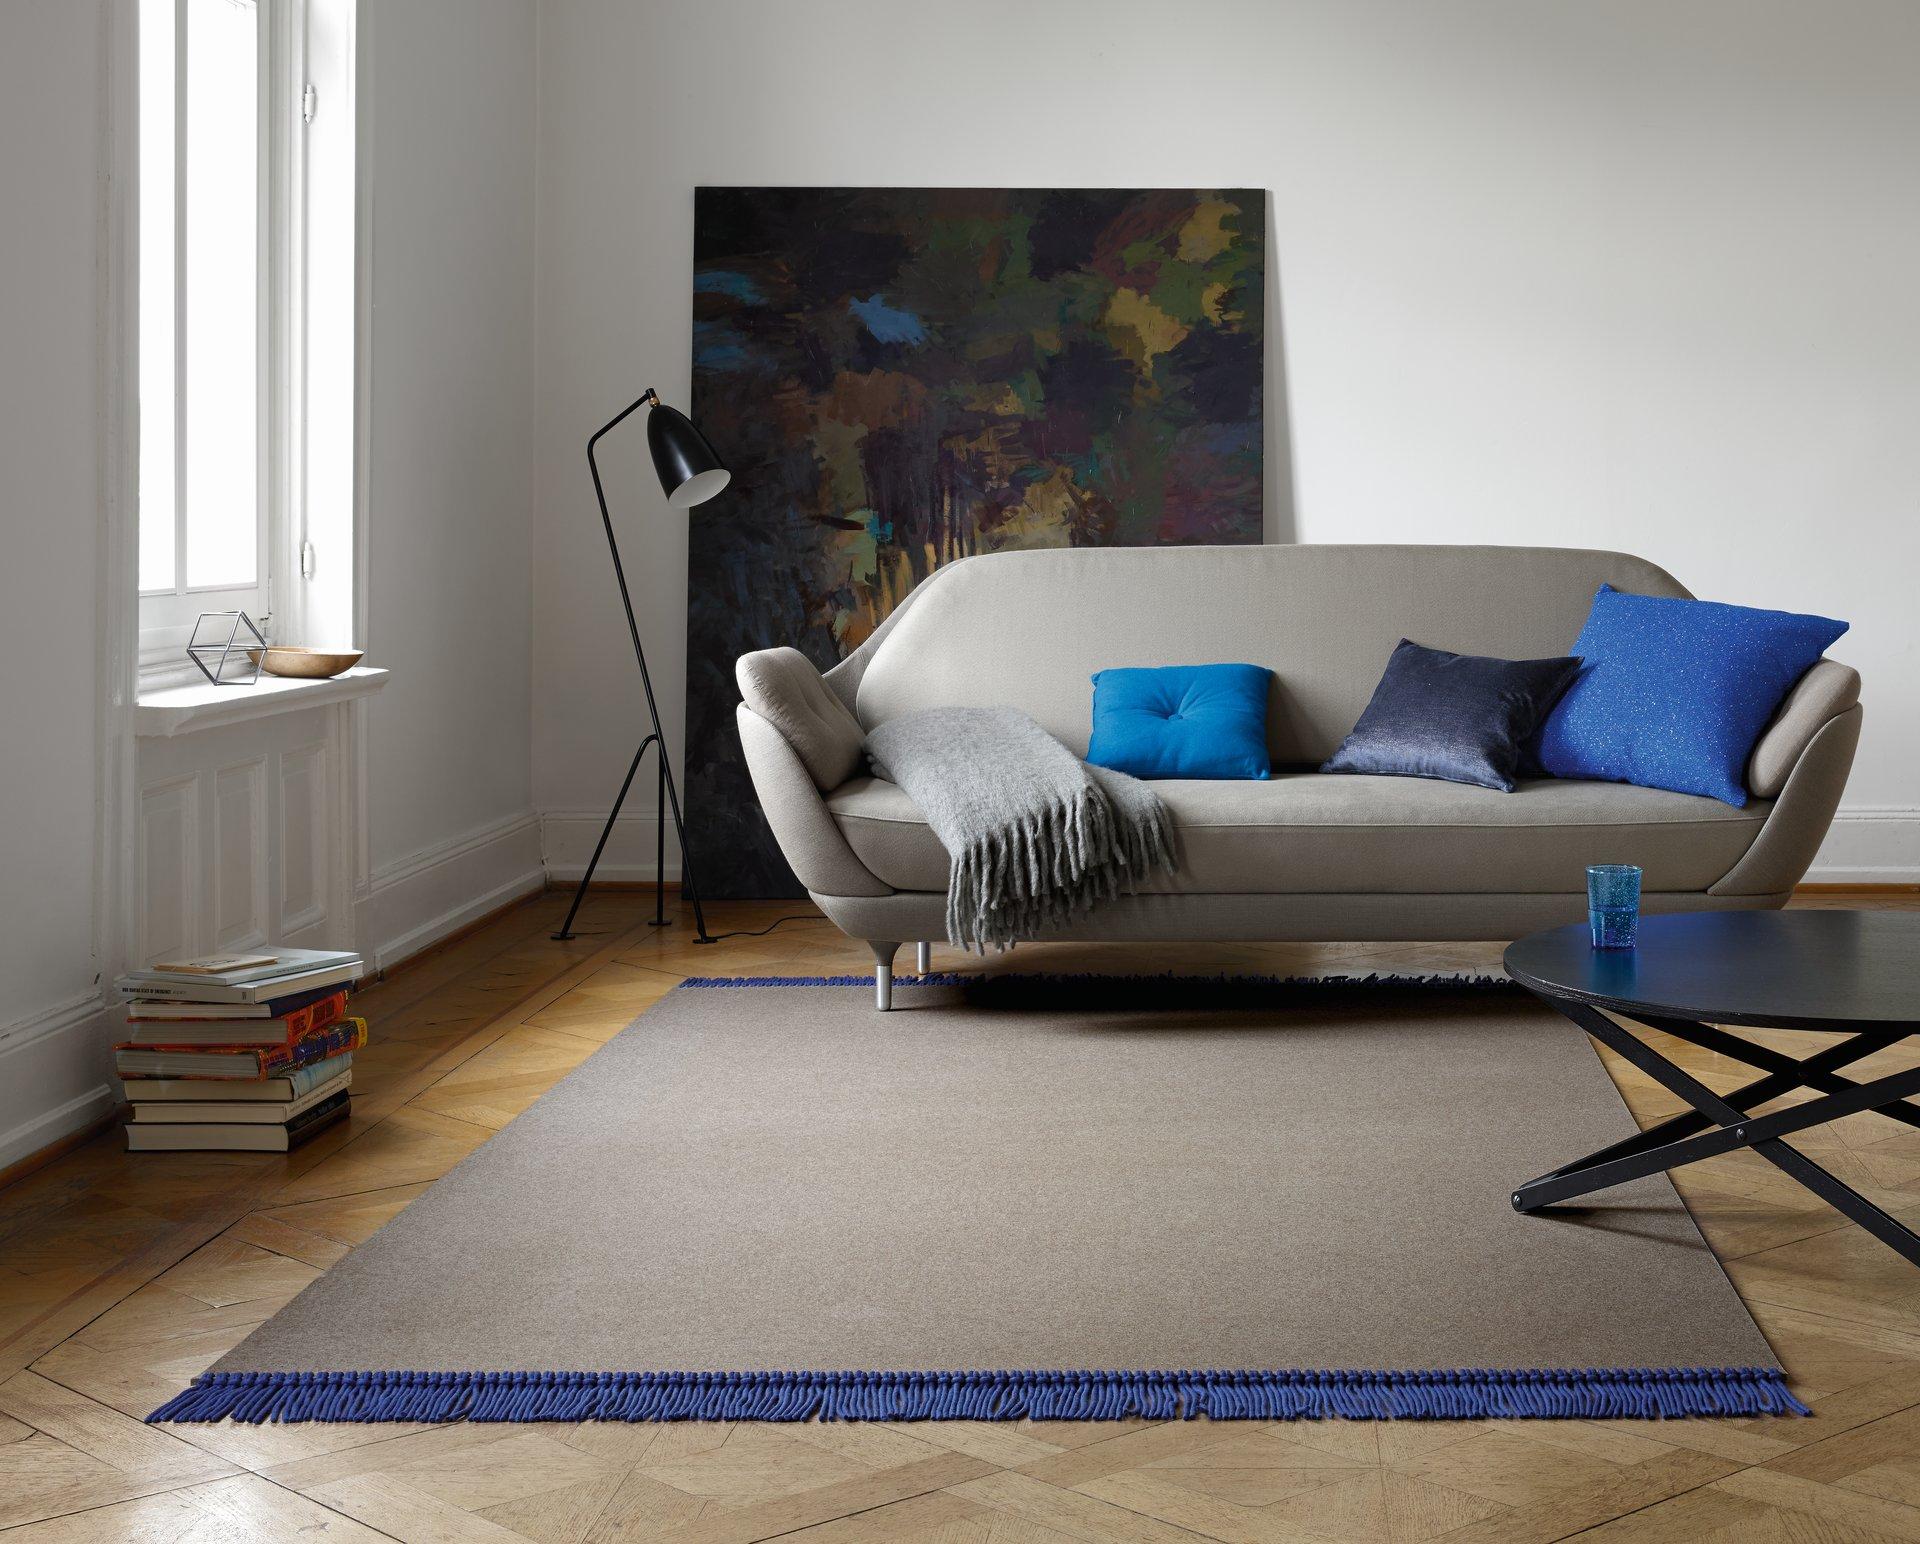 Minimalistische Wohnidee mit Filzteppich #teppich #tagesdecke ©JAB Flooring / jab.de